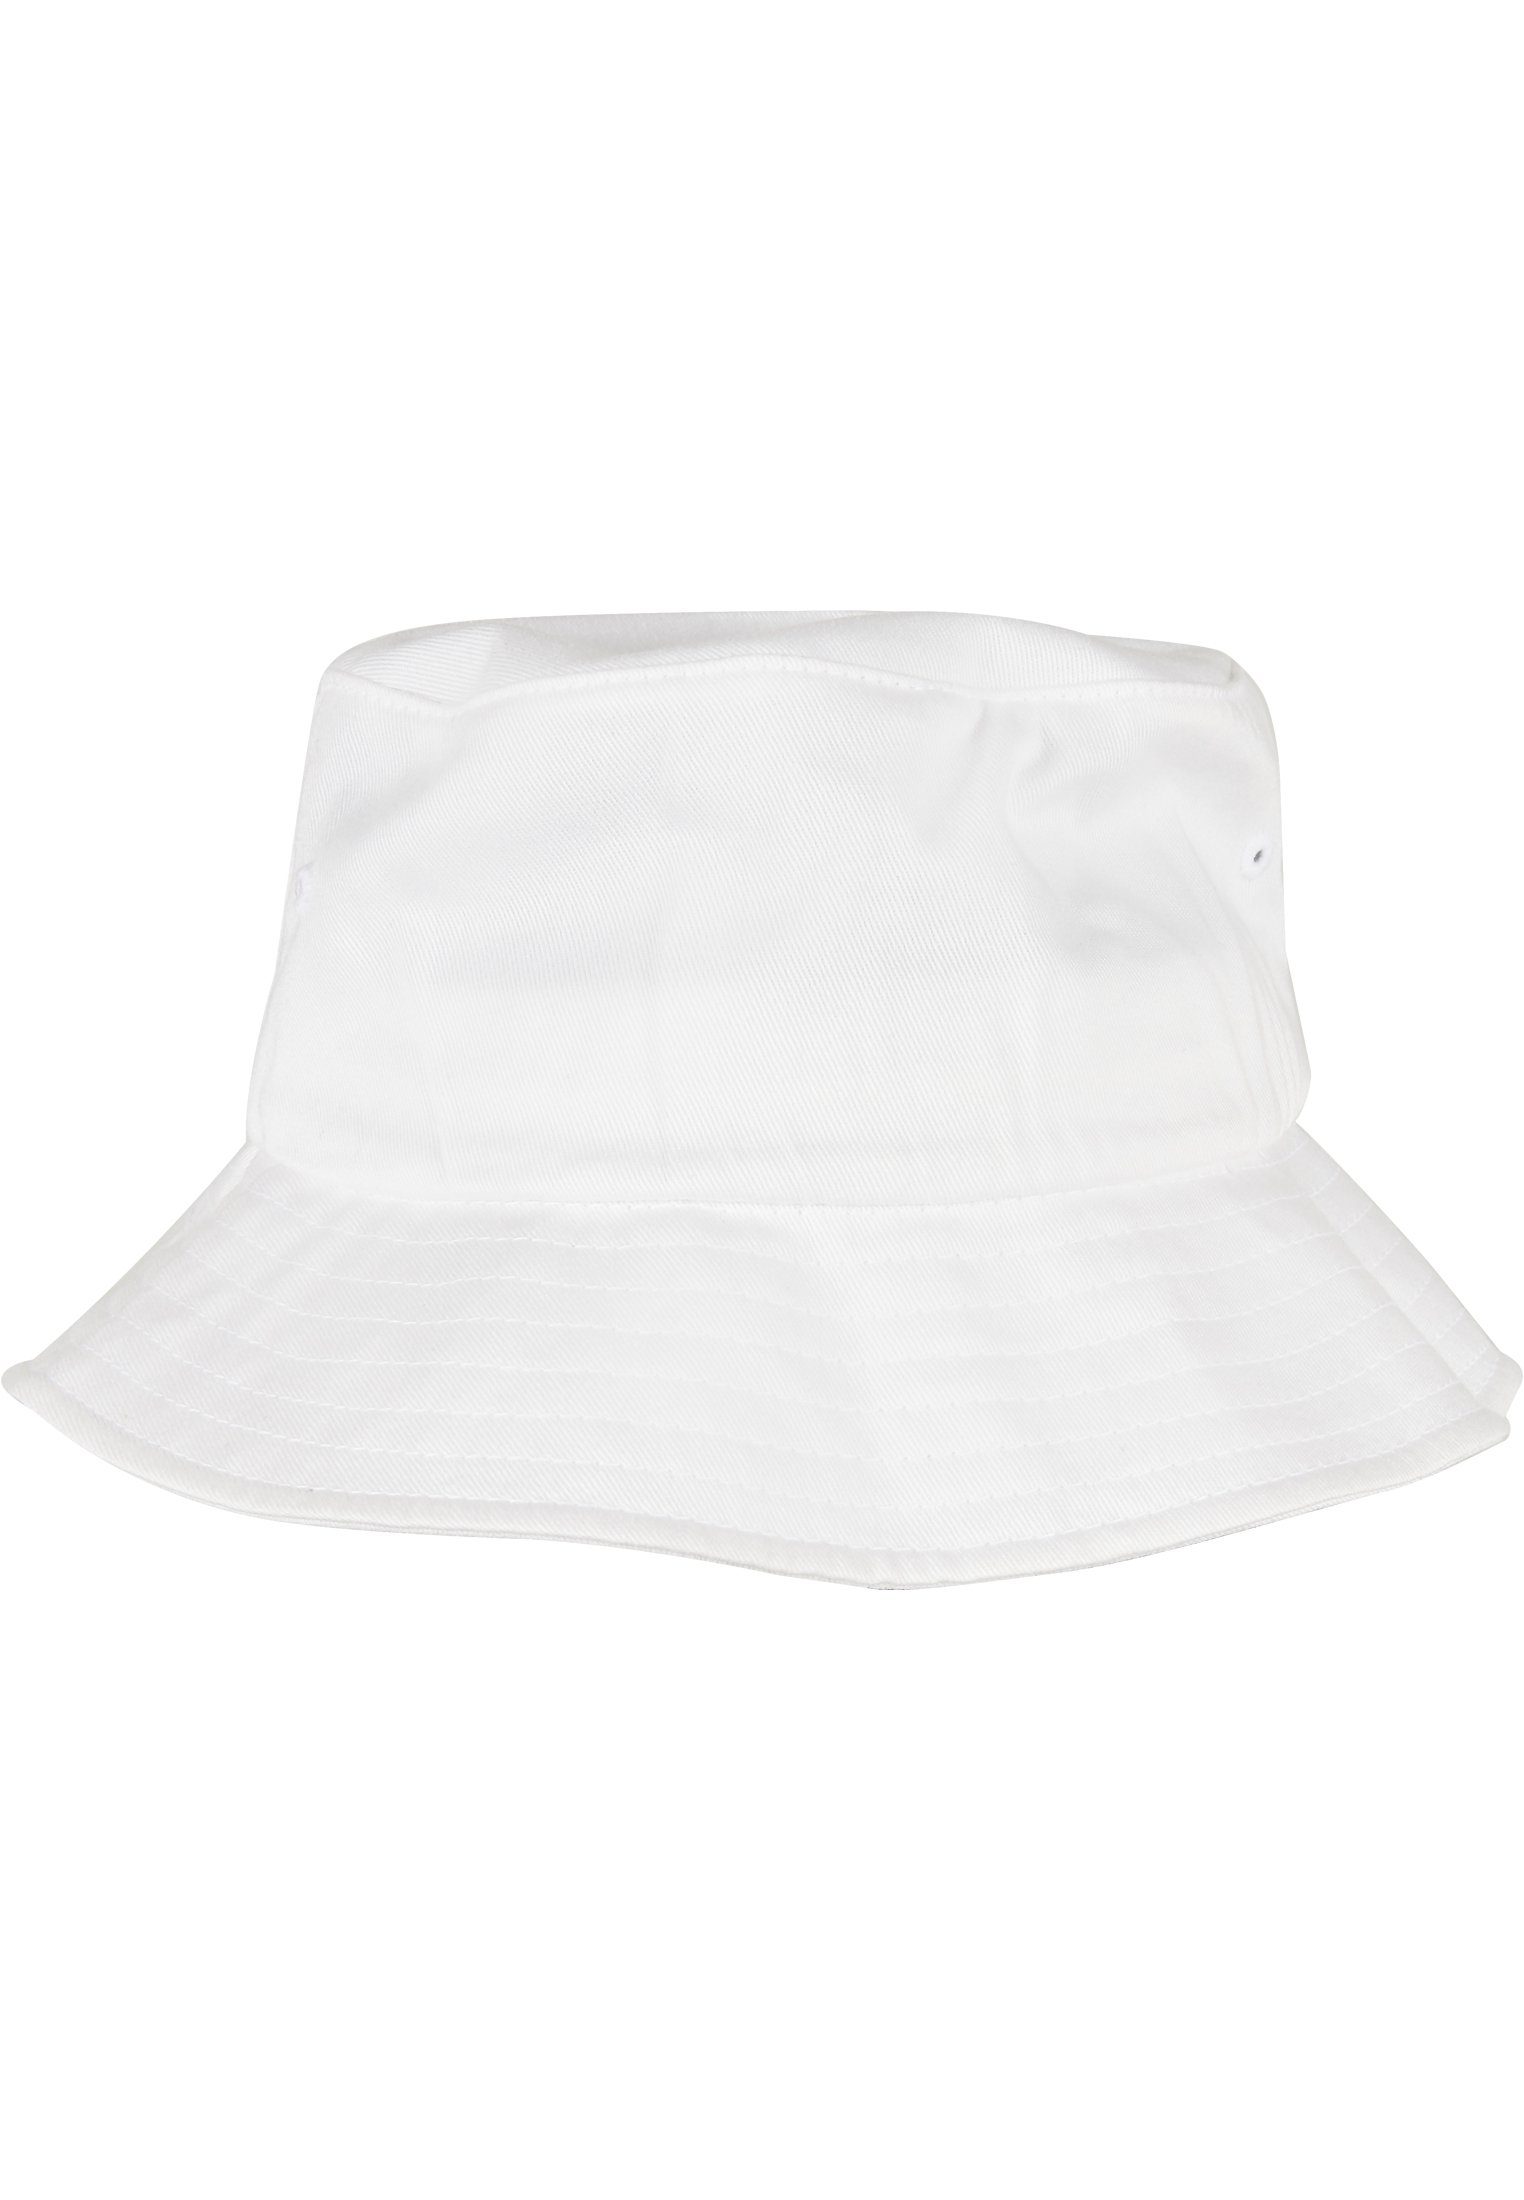 Hat Accessoires Bucket white Flex Flexfit Cap Cotton Organic